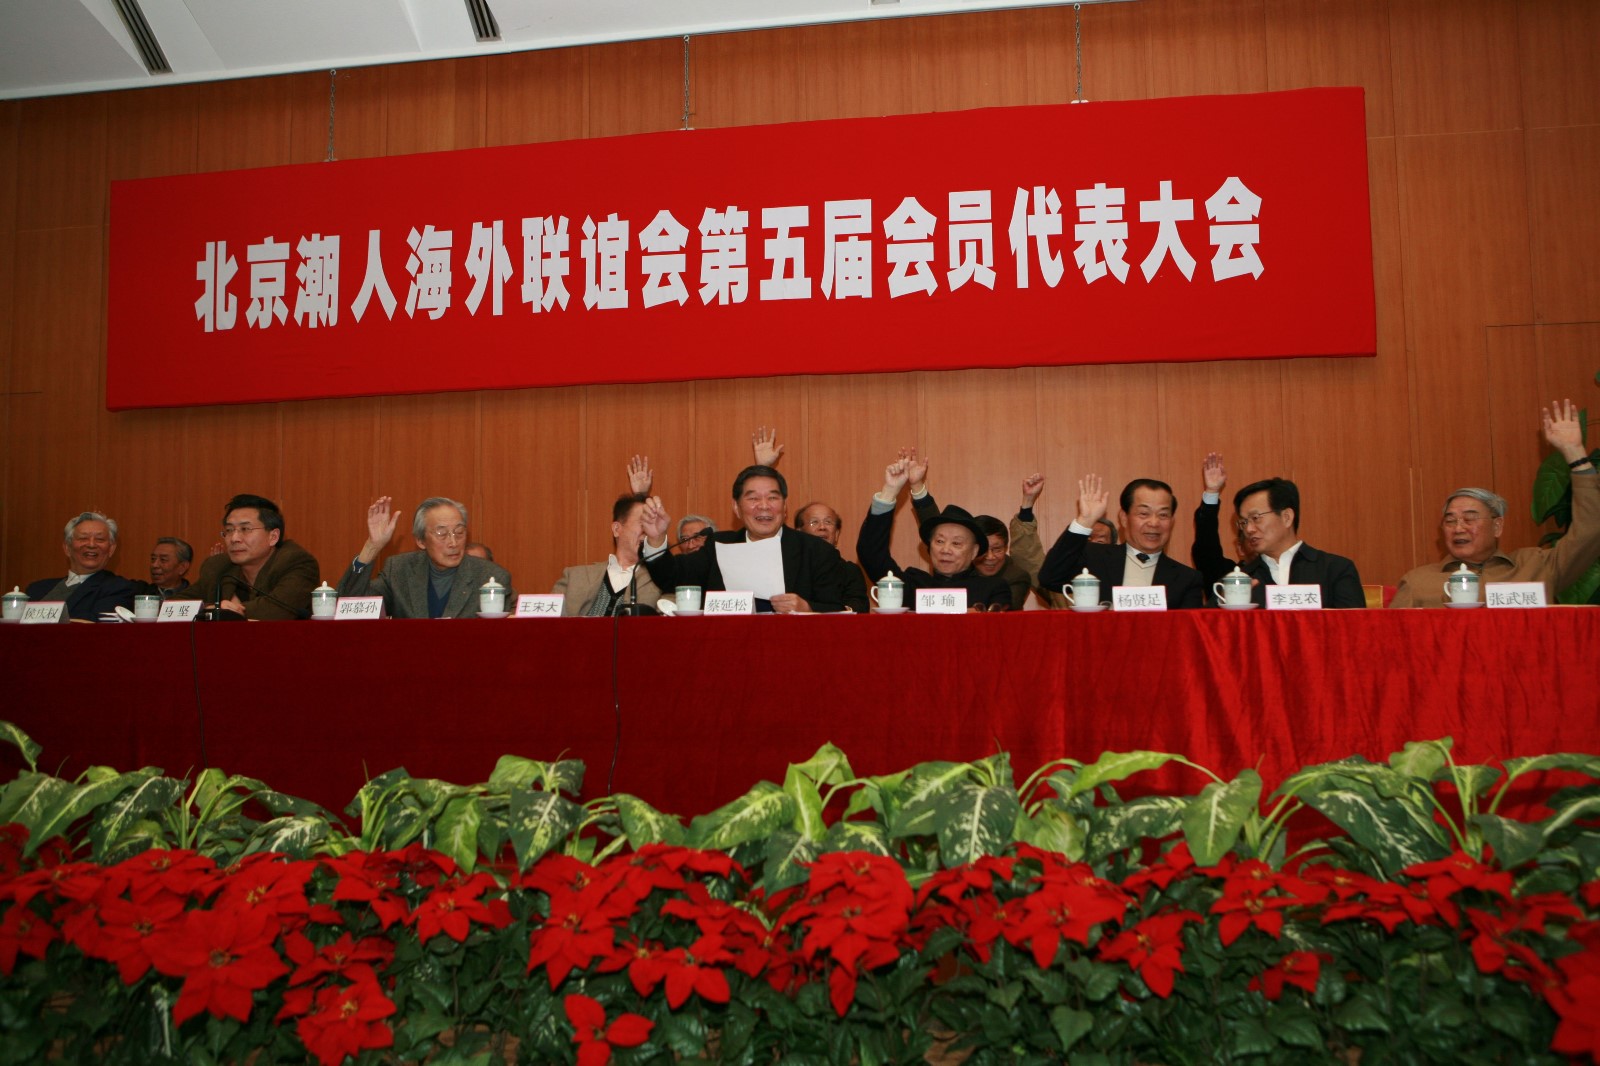 2010年4月25日第五届会员代表大会主席台上就坐的领导举手通过新一届领导班子人选.JPG